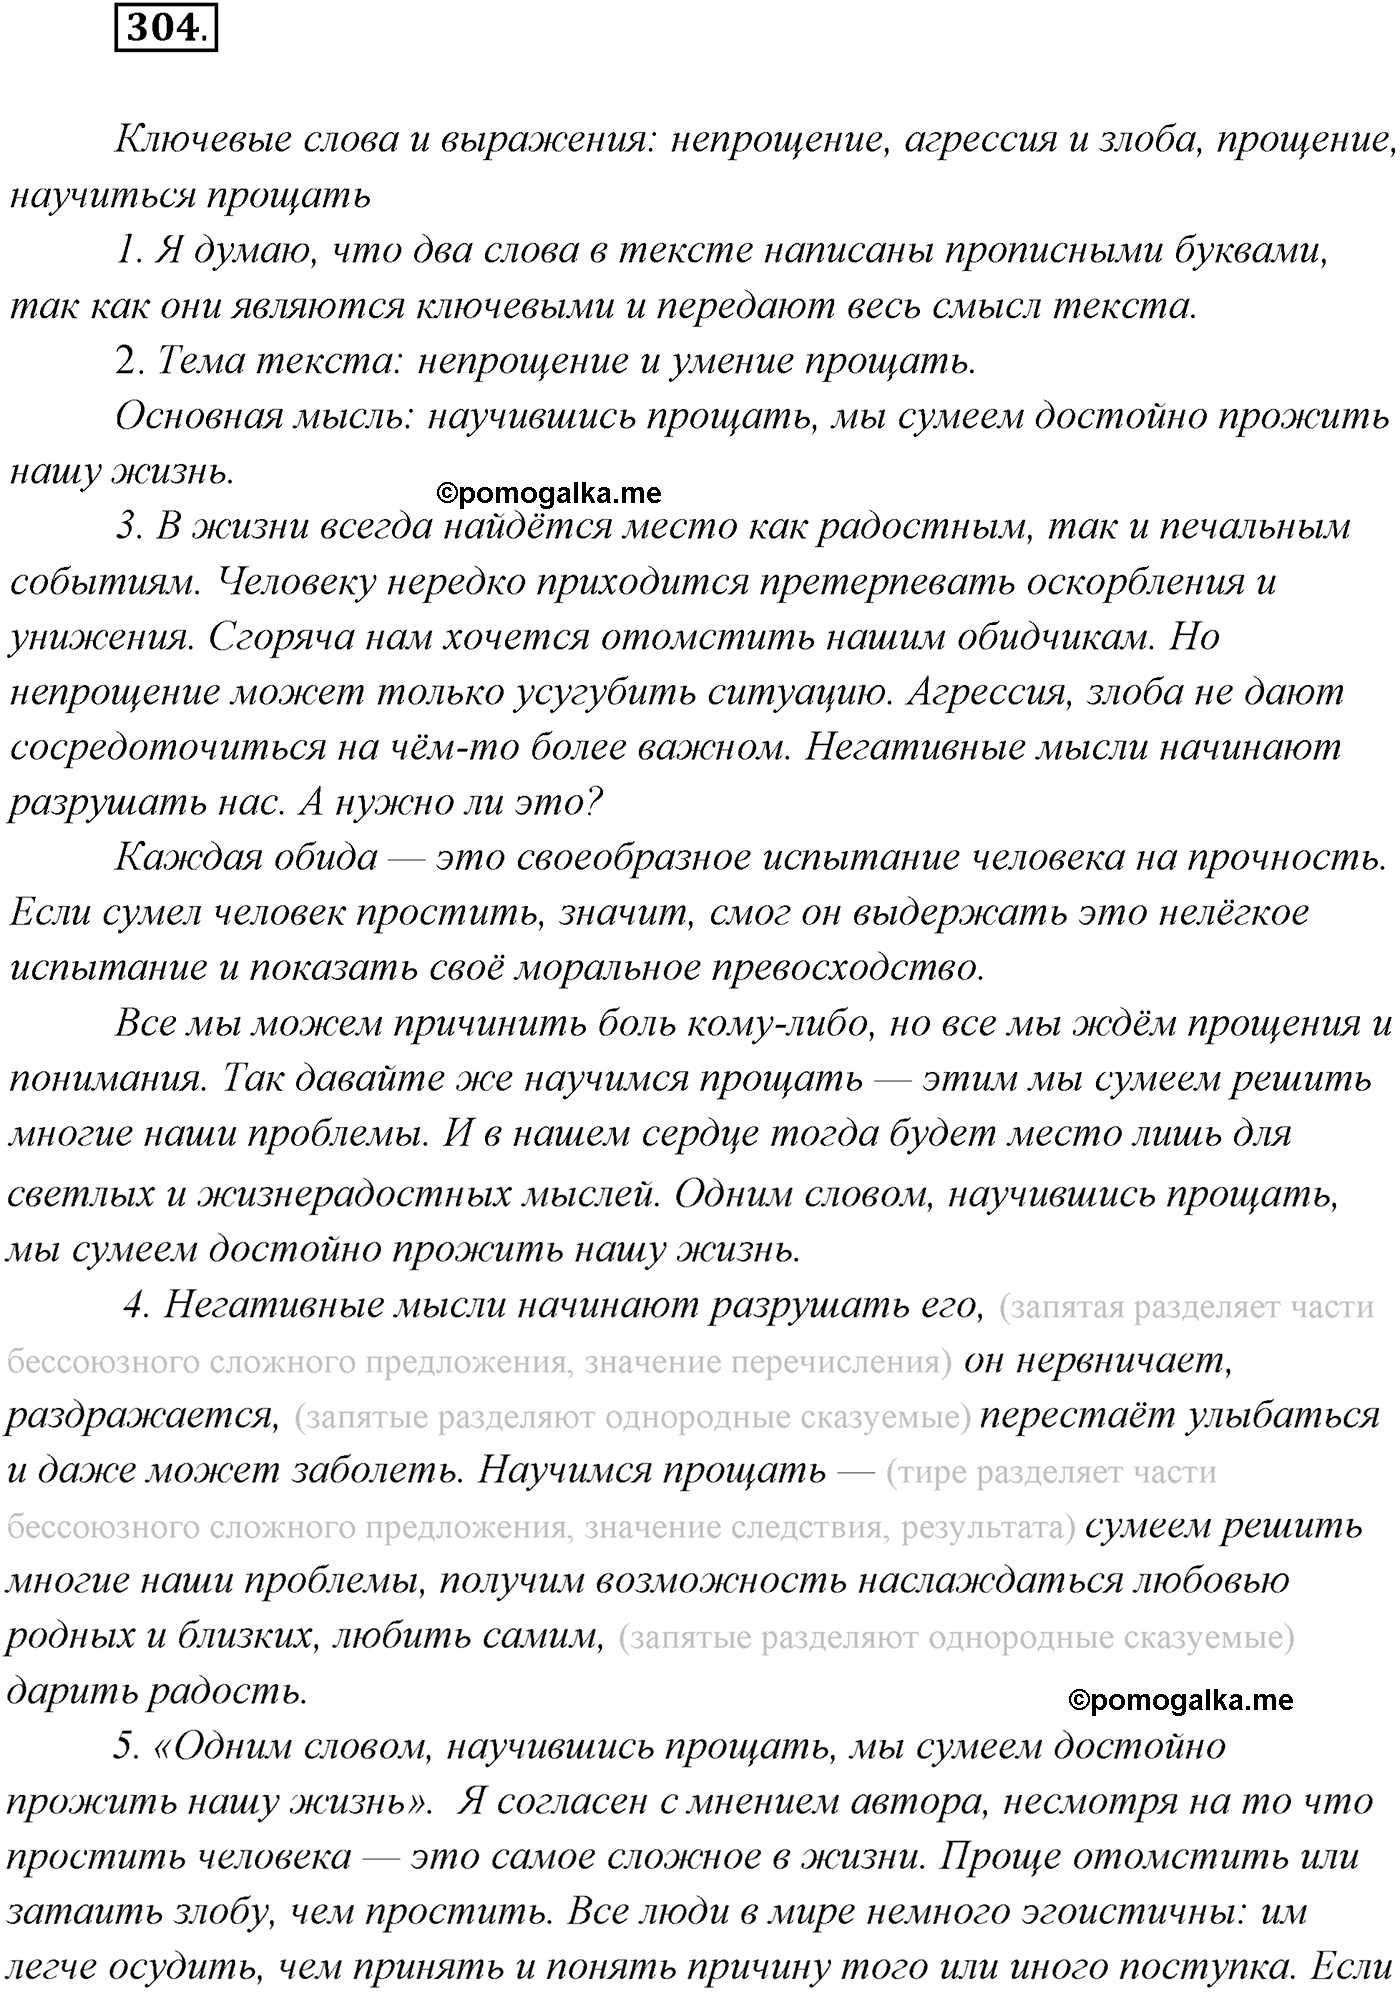 упражнение №304 русский язык 9 класс Рыбченкова, Александрова